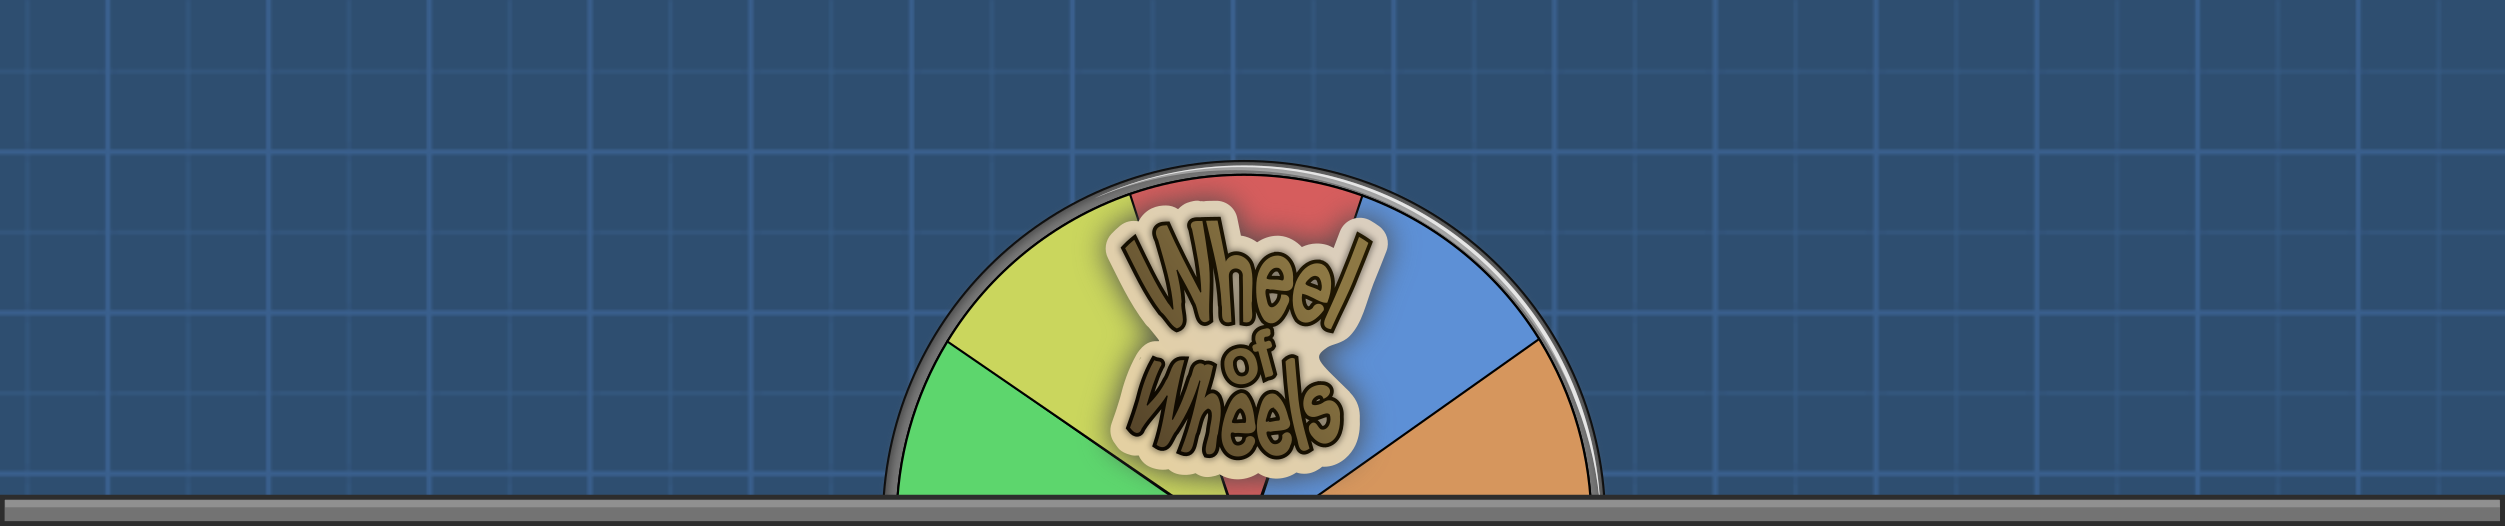 Wheel of Wheels